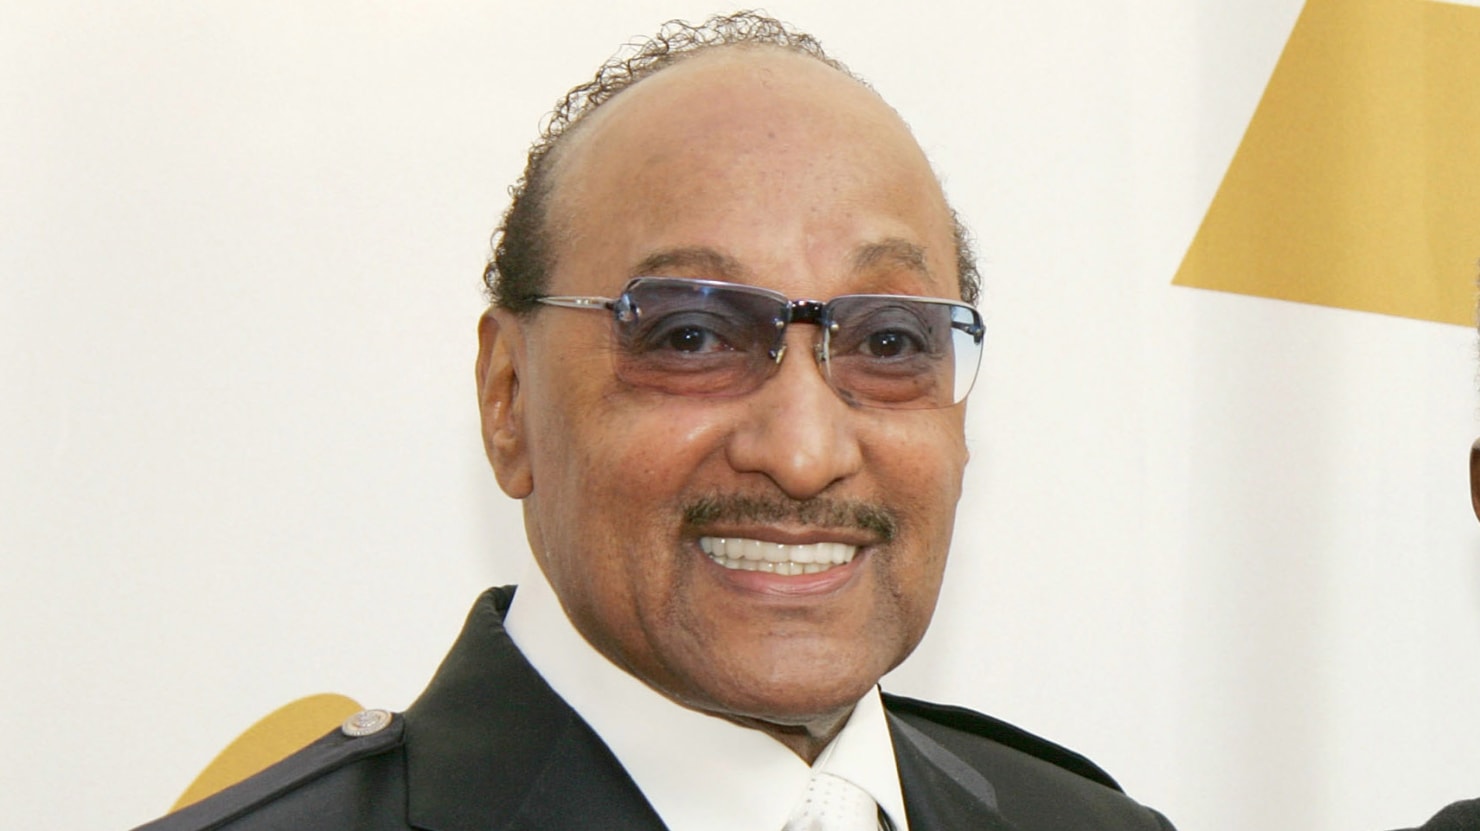 Abdul ‘Duke’ Fakir, Last Remaining Original Member of The Four Tops, Dies at 88